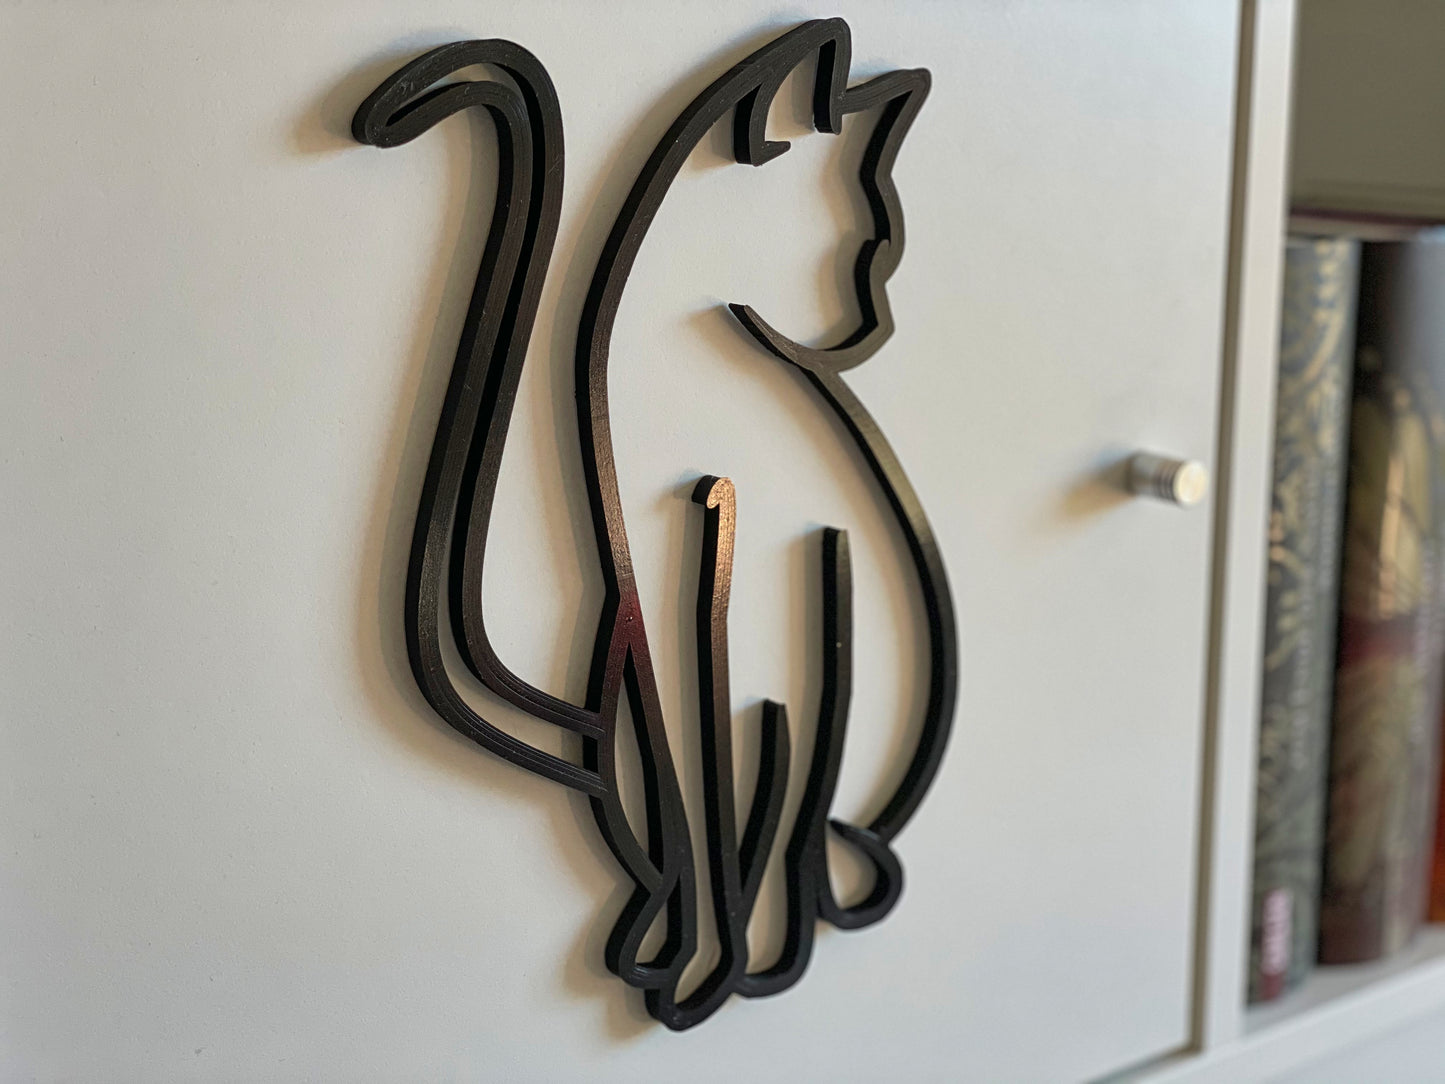 Katzenzauber: Wanddekoration 3D-gedruckt - Elegante Katzenfigur in glitzernden Farben für Ihr Zuhause!s recyclebarem PLA Kunststoff - Ideales Geschenk für Katzenfreunde